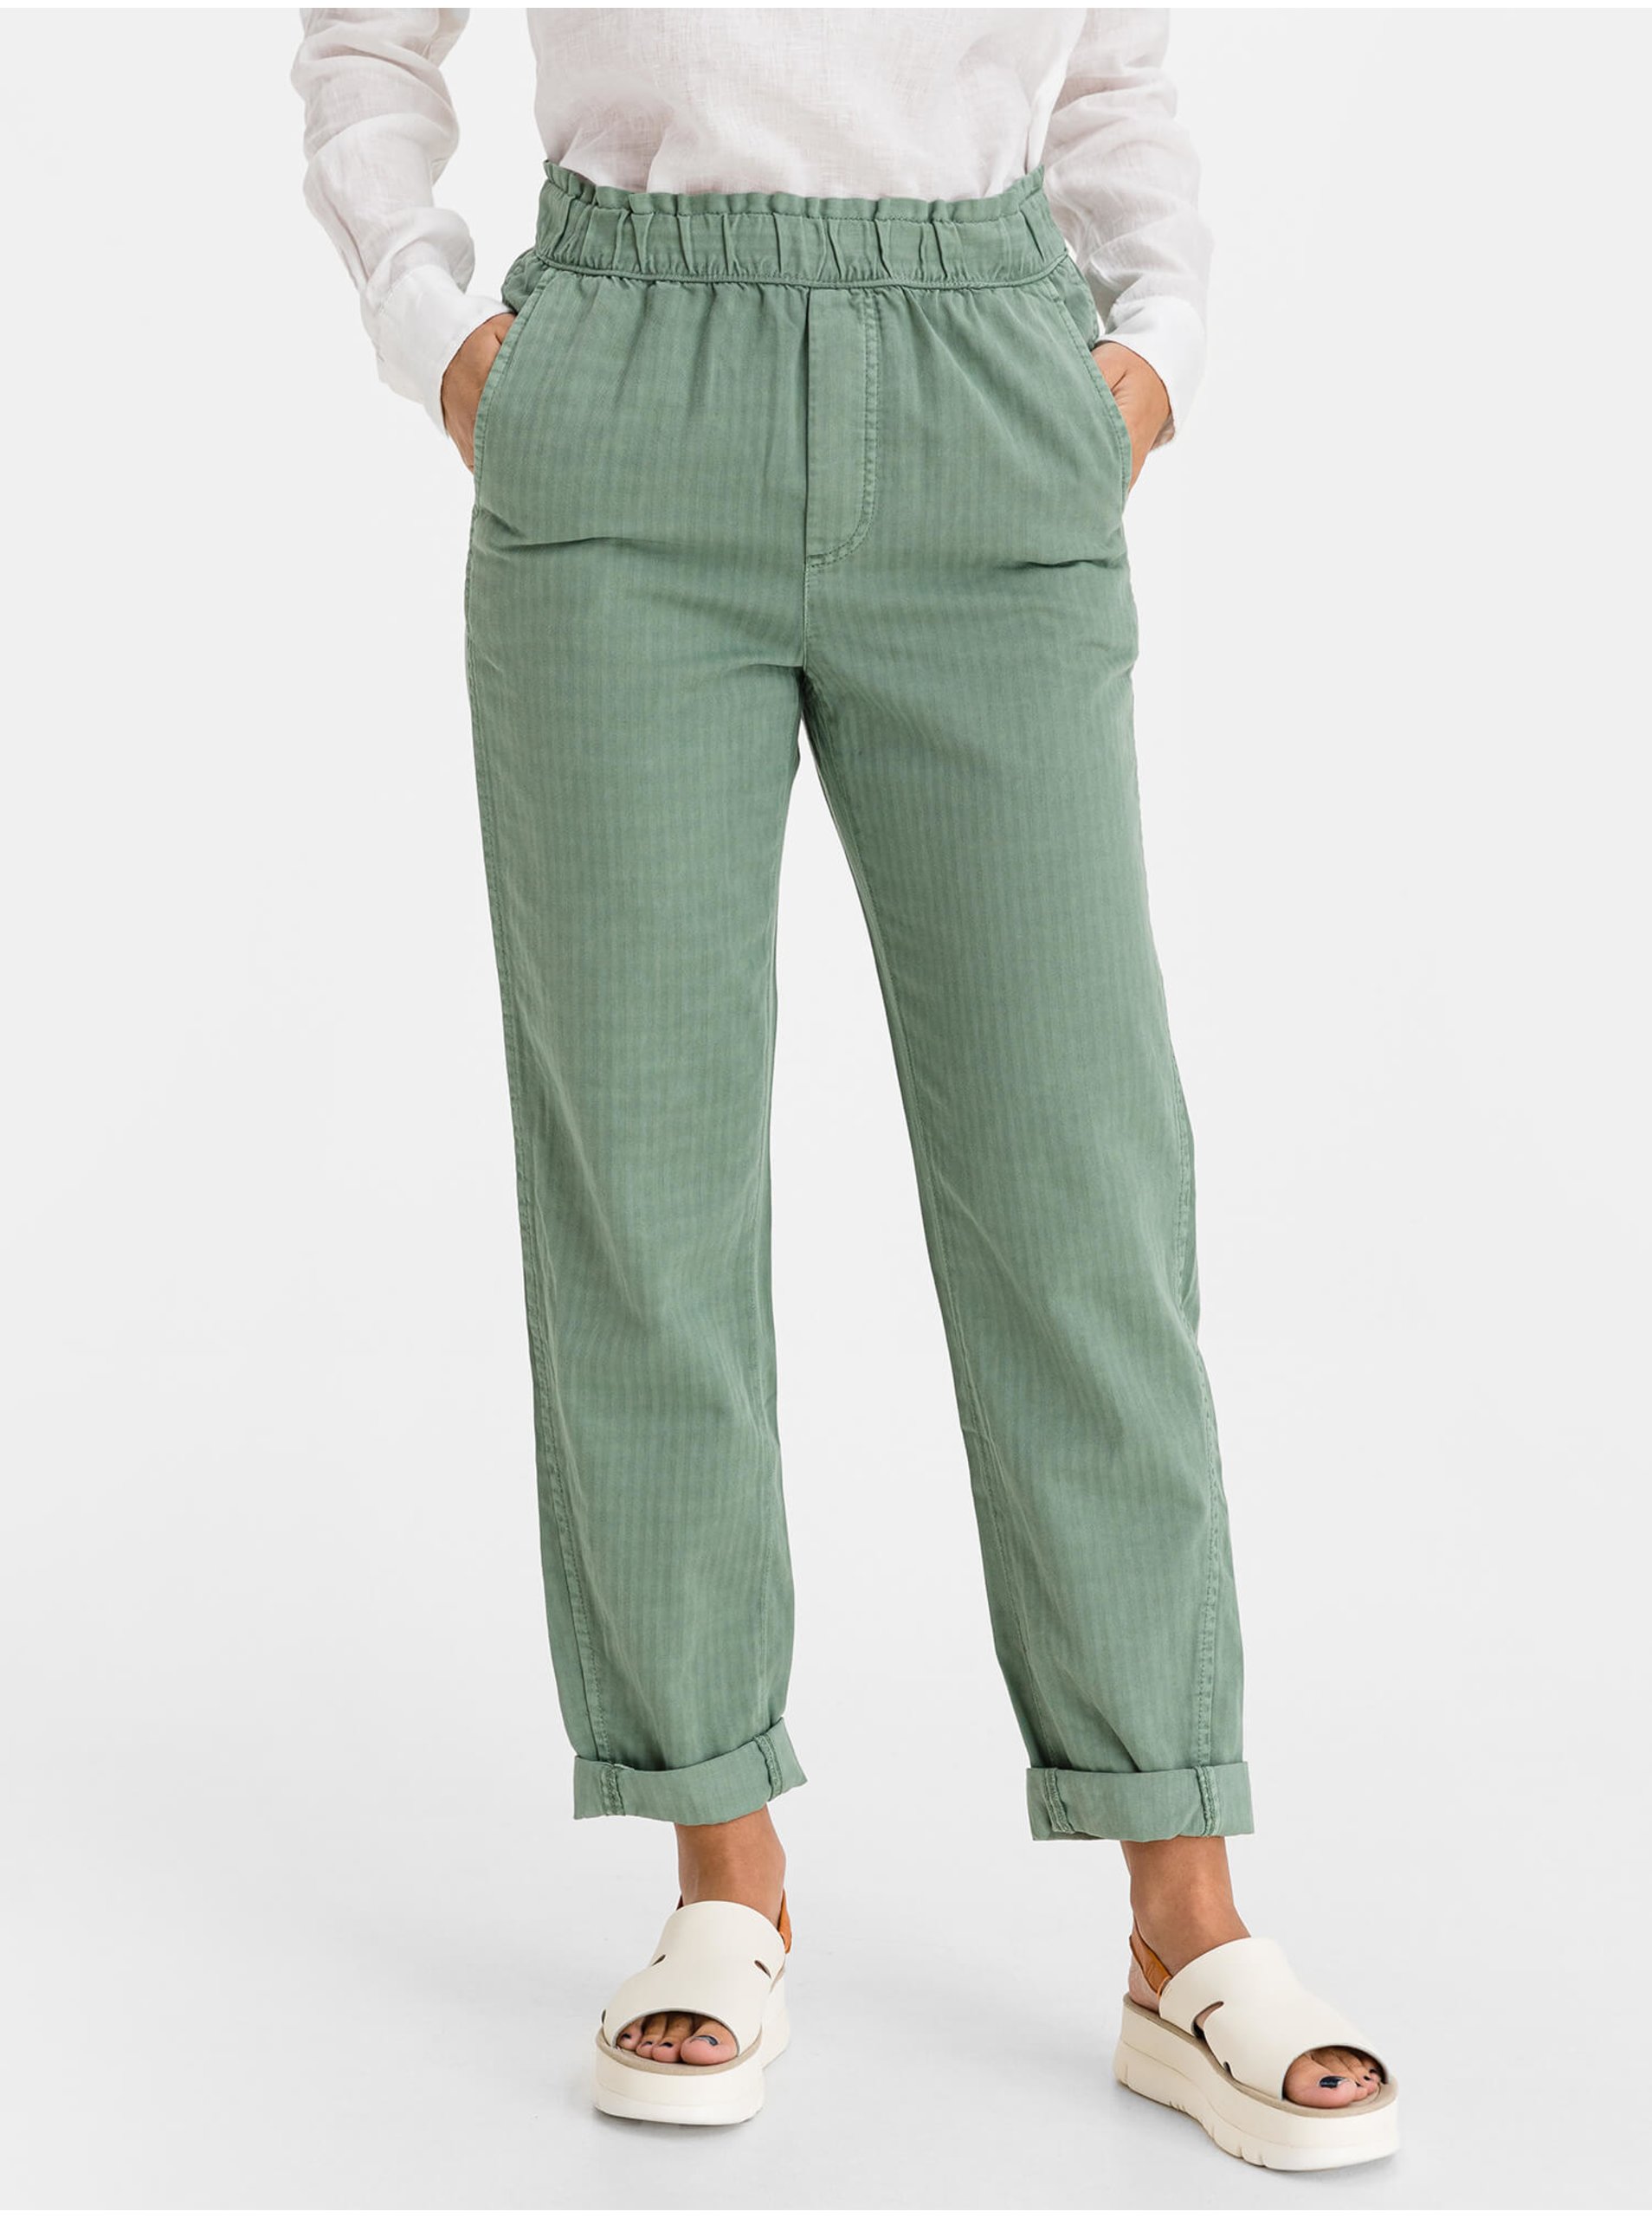 Lacno Zelené dámské kalhoty high rise paperbag pull-on pants GAP